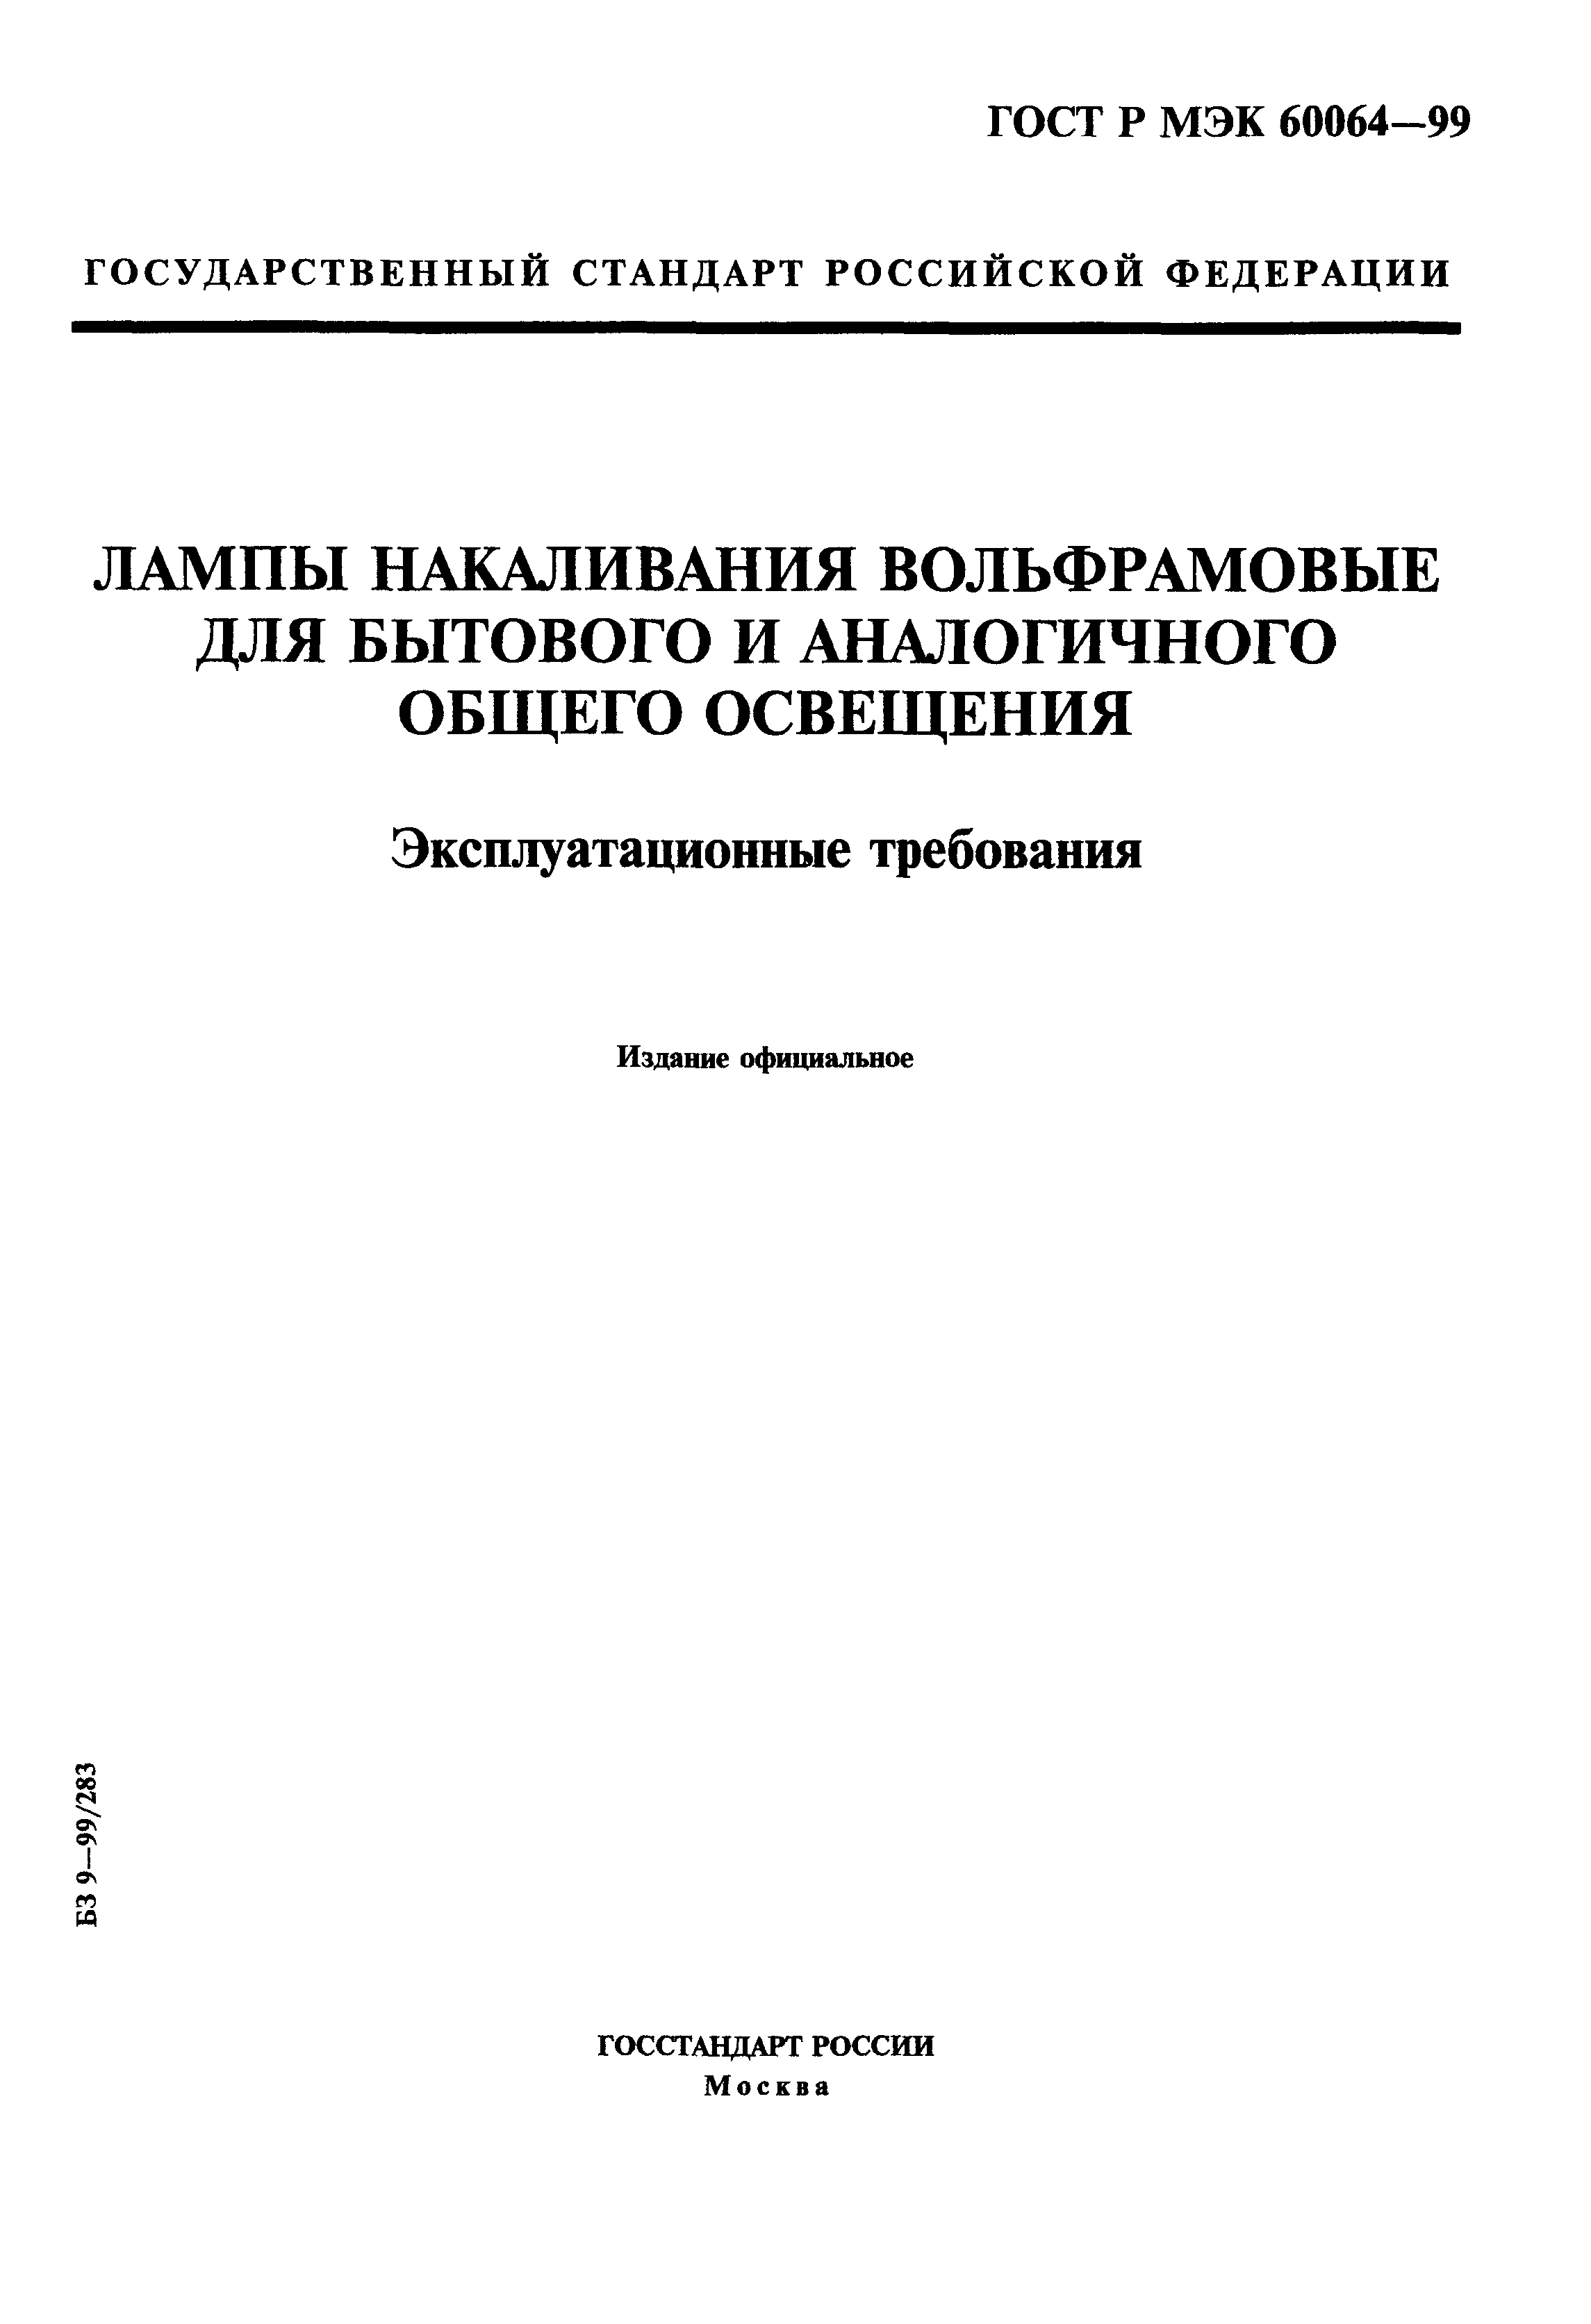 ГОСТ Р МЭК 60064-99